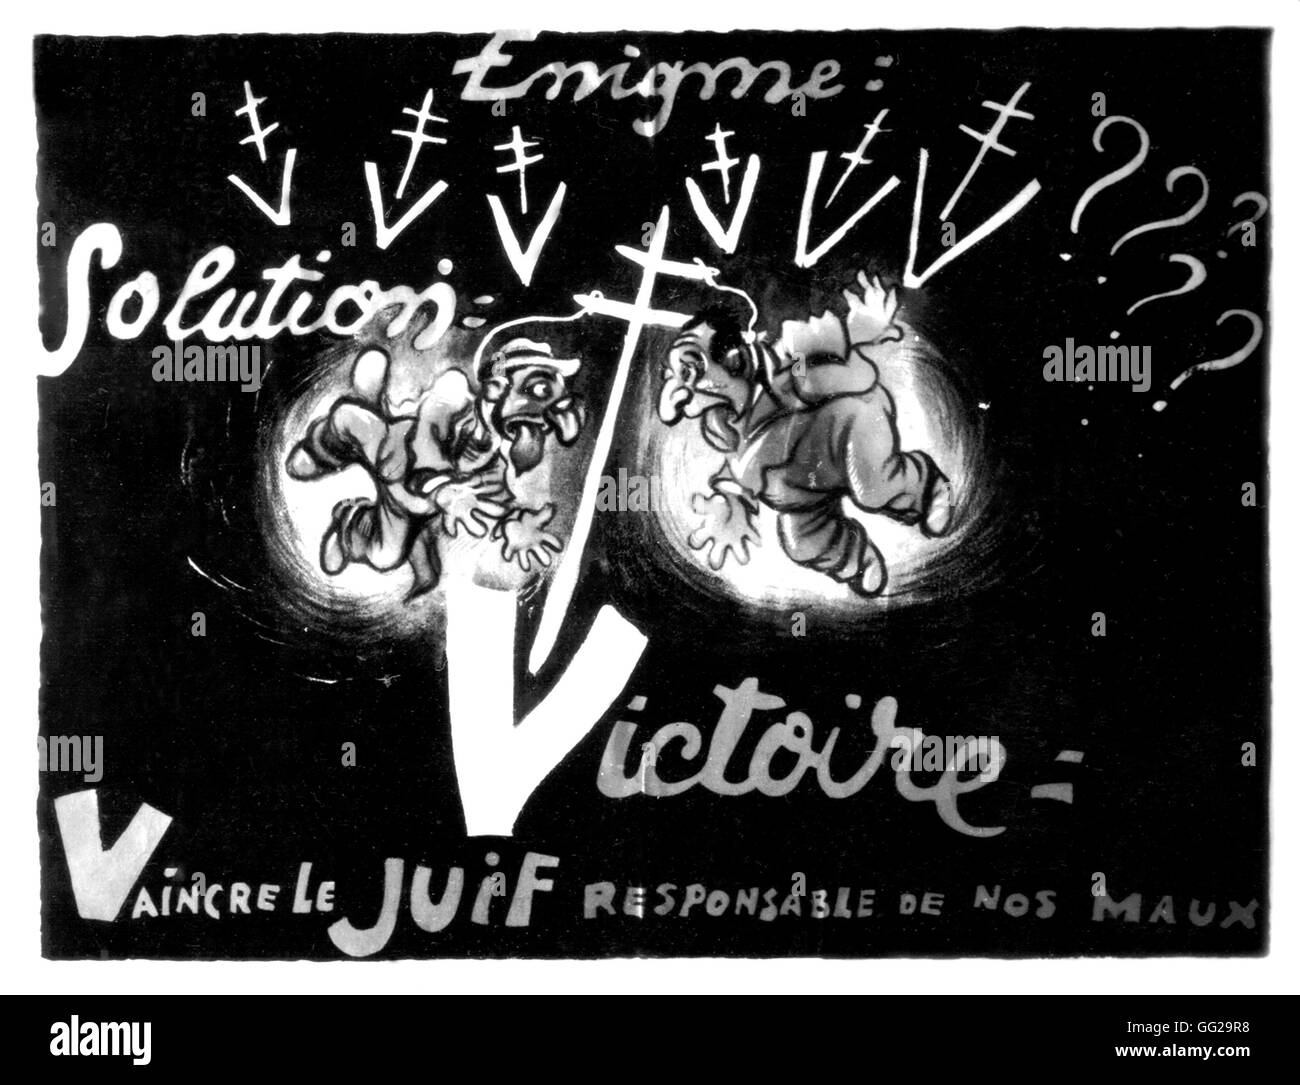 Antisemitismus-Graffiti aus dem Résistance-Bewegung Periode 1940 - 1944 Frankreich, zweiten Weltkrieg Krieg Stockfoto